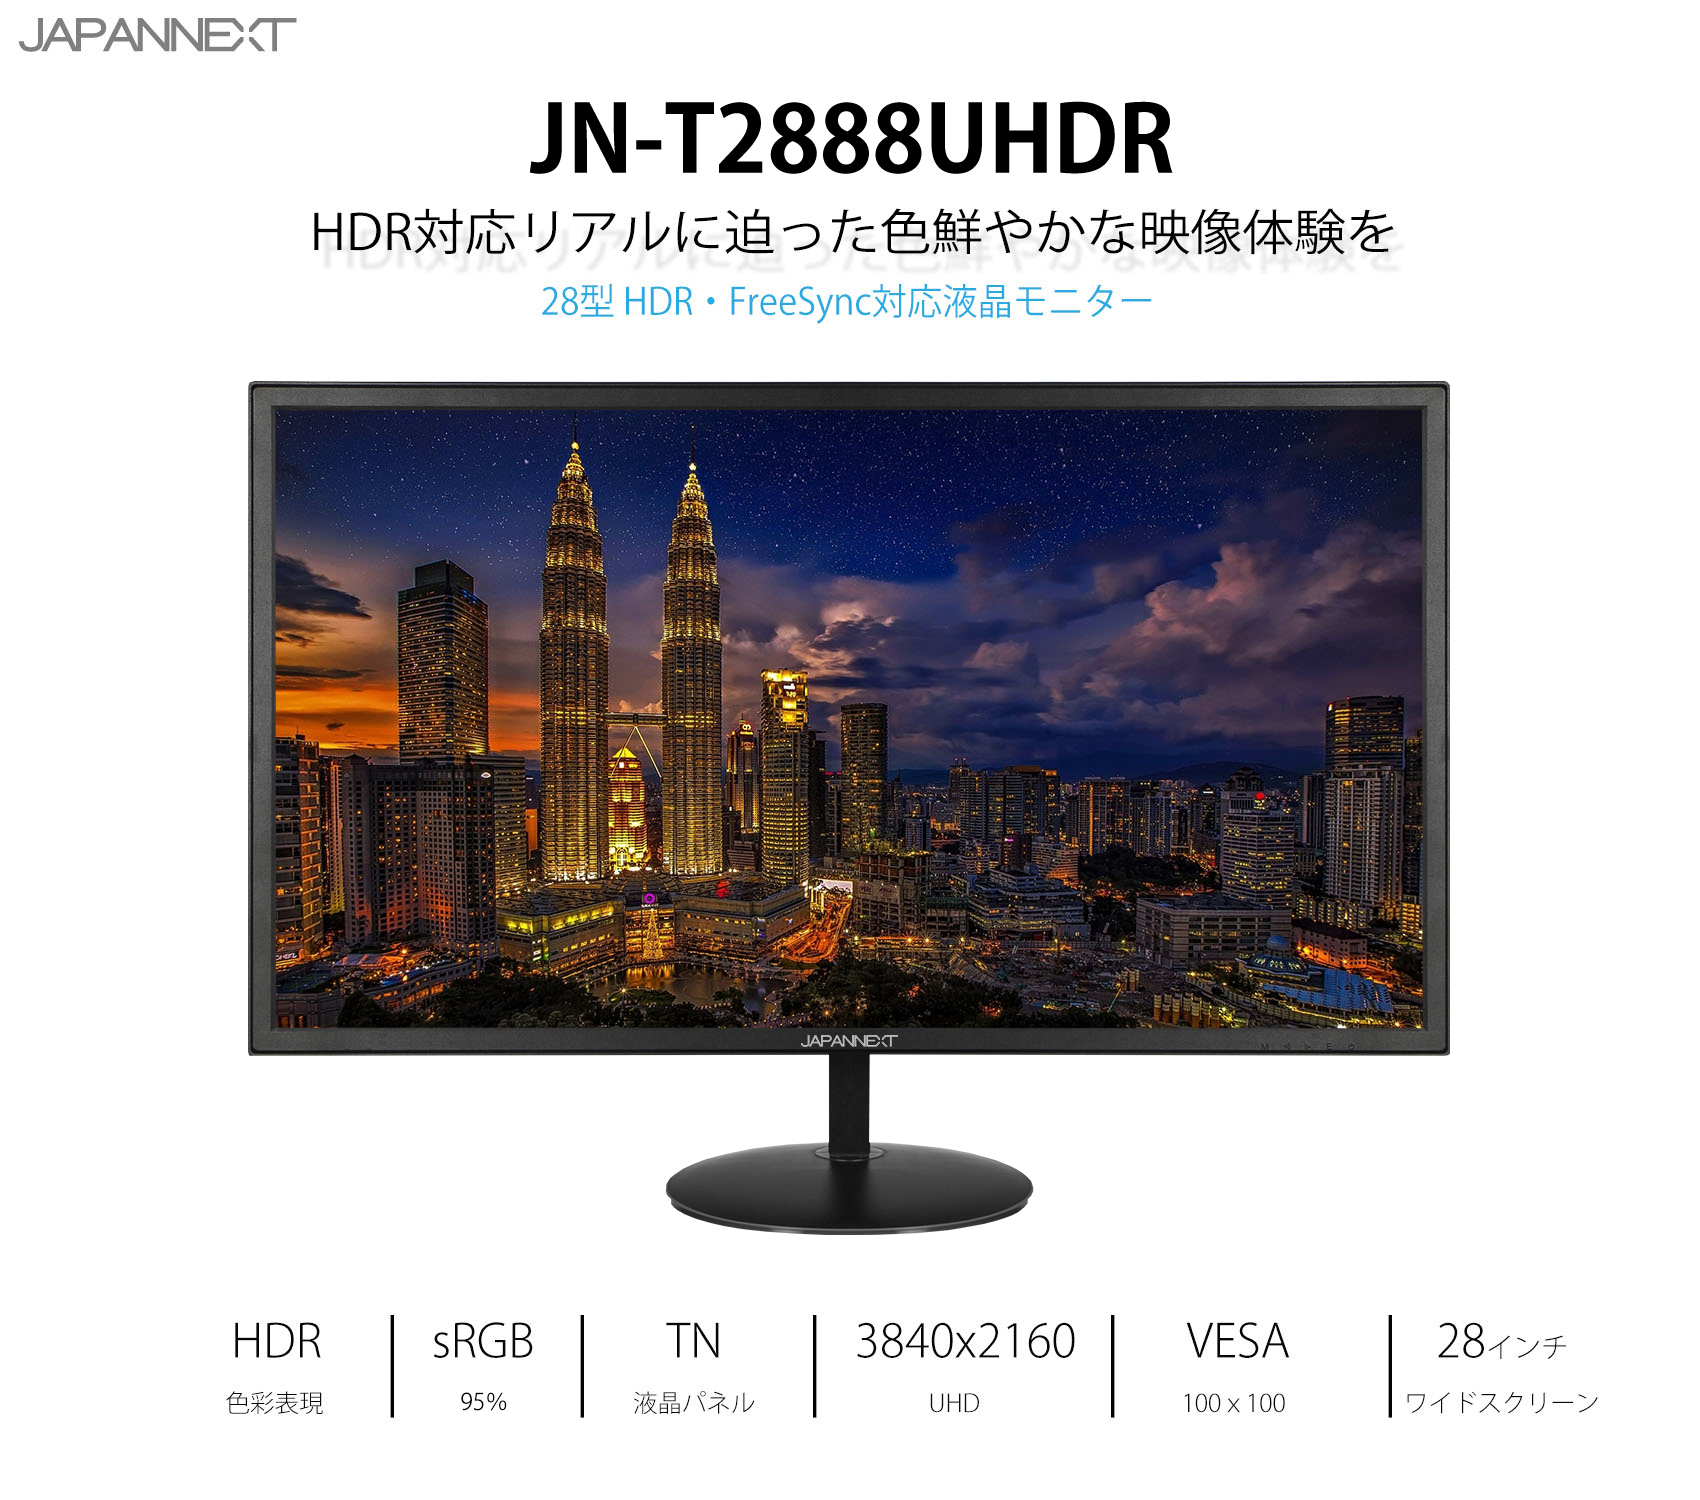 JAPANNEXT 28インチ IPSパネル 4K(3840x2160)液晶モニター HDR対応 JN